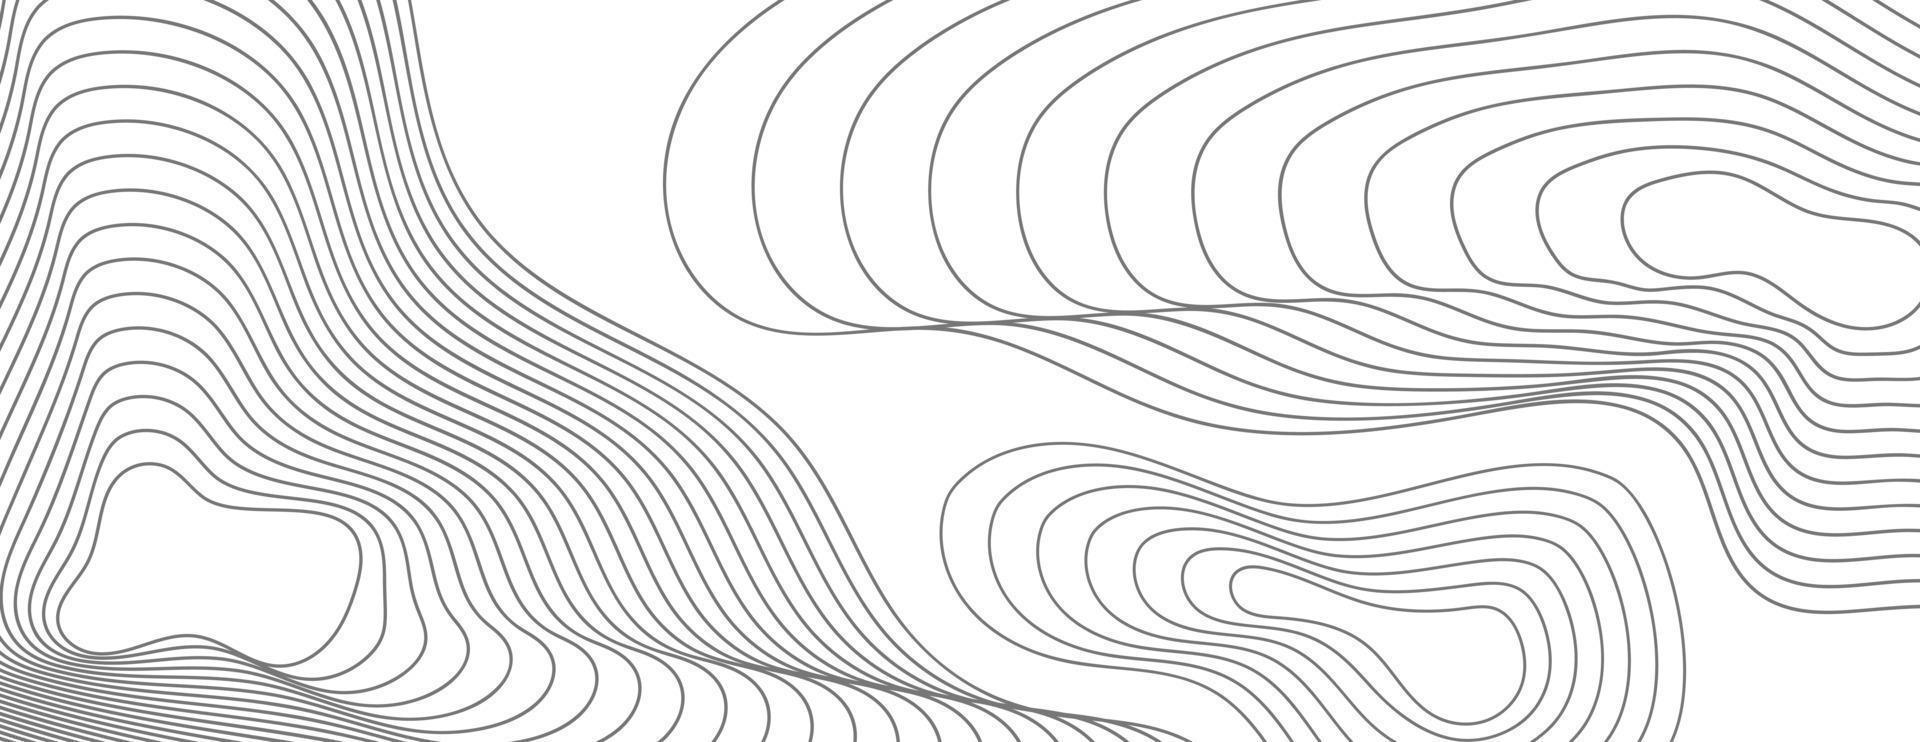 abstract achtergrond met biologisch vorm en hand- trek lijn in pastel kleuren. modern ontwerp sjabloon met ruimte voor tekst. minimaal elegant Hoes voor branding ontwerp. vector